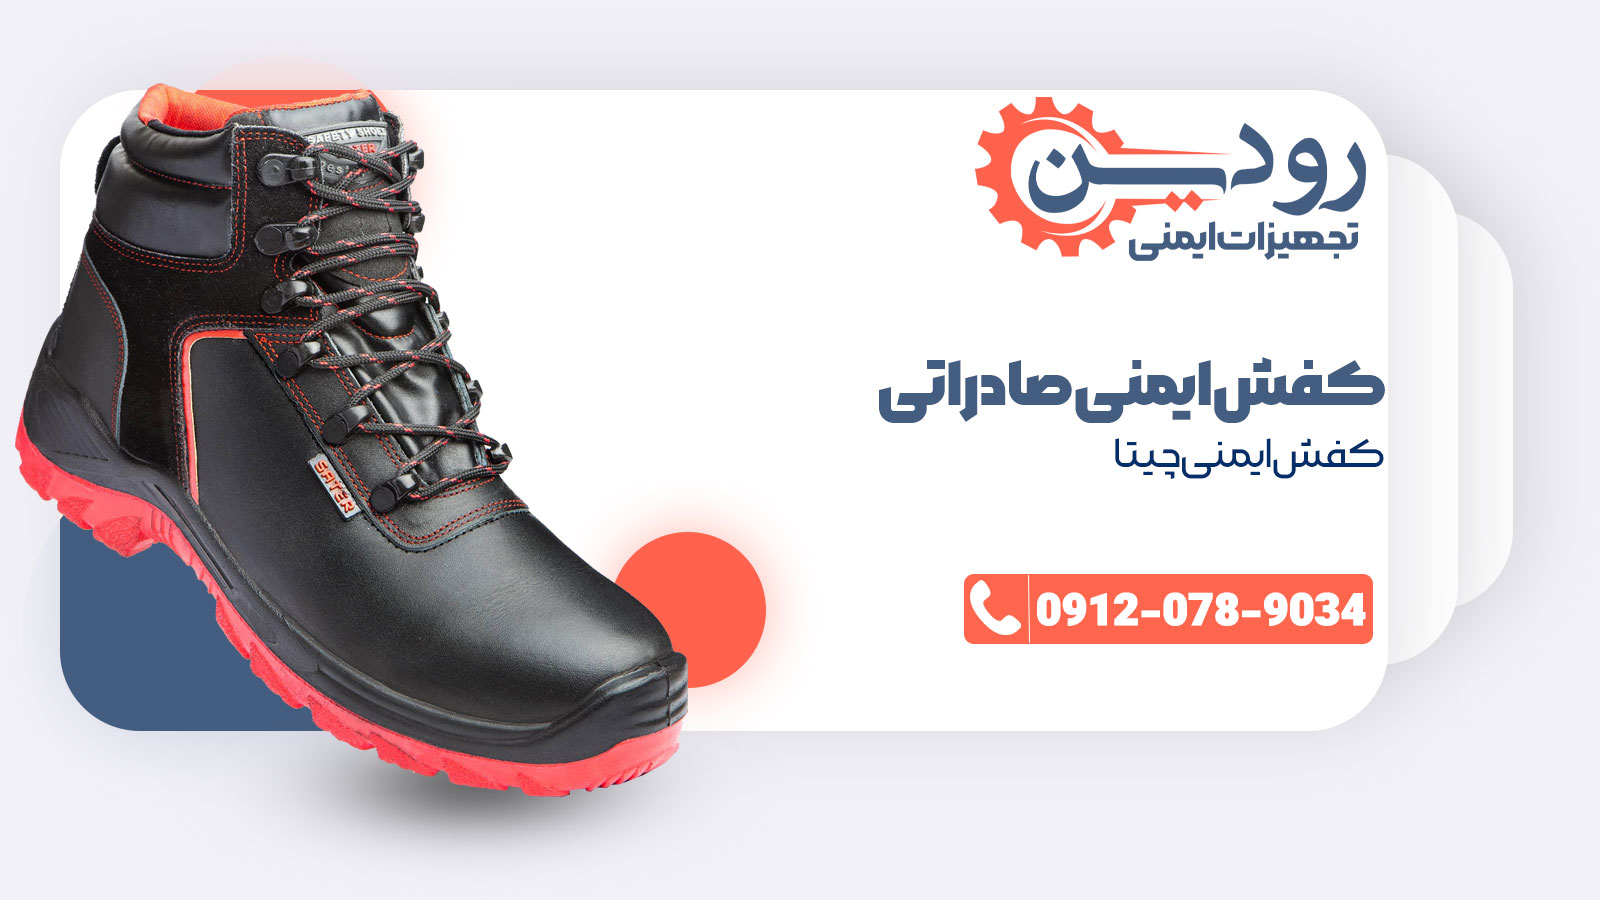 فروش کفش ایمنی صادراتی به قیمت کارخانه توسط شرکت رودین صنعت انجام پذیر است.